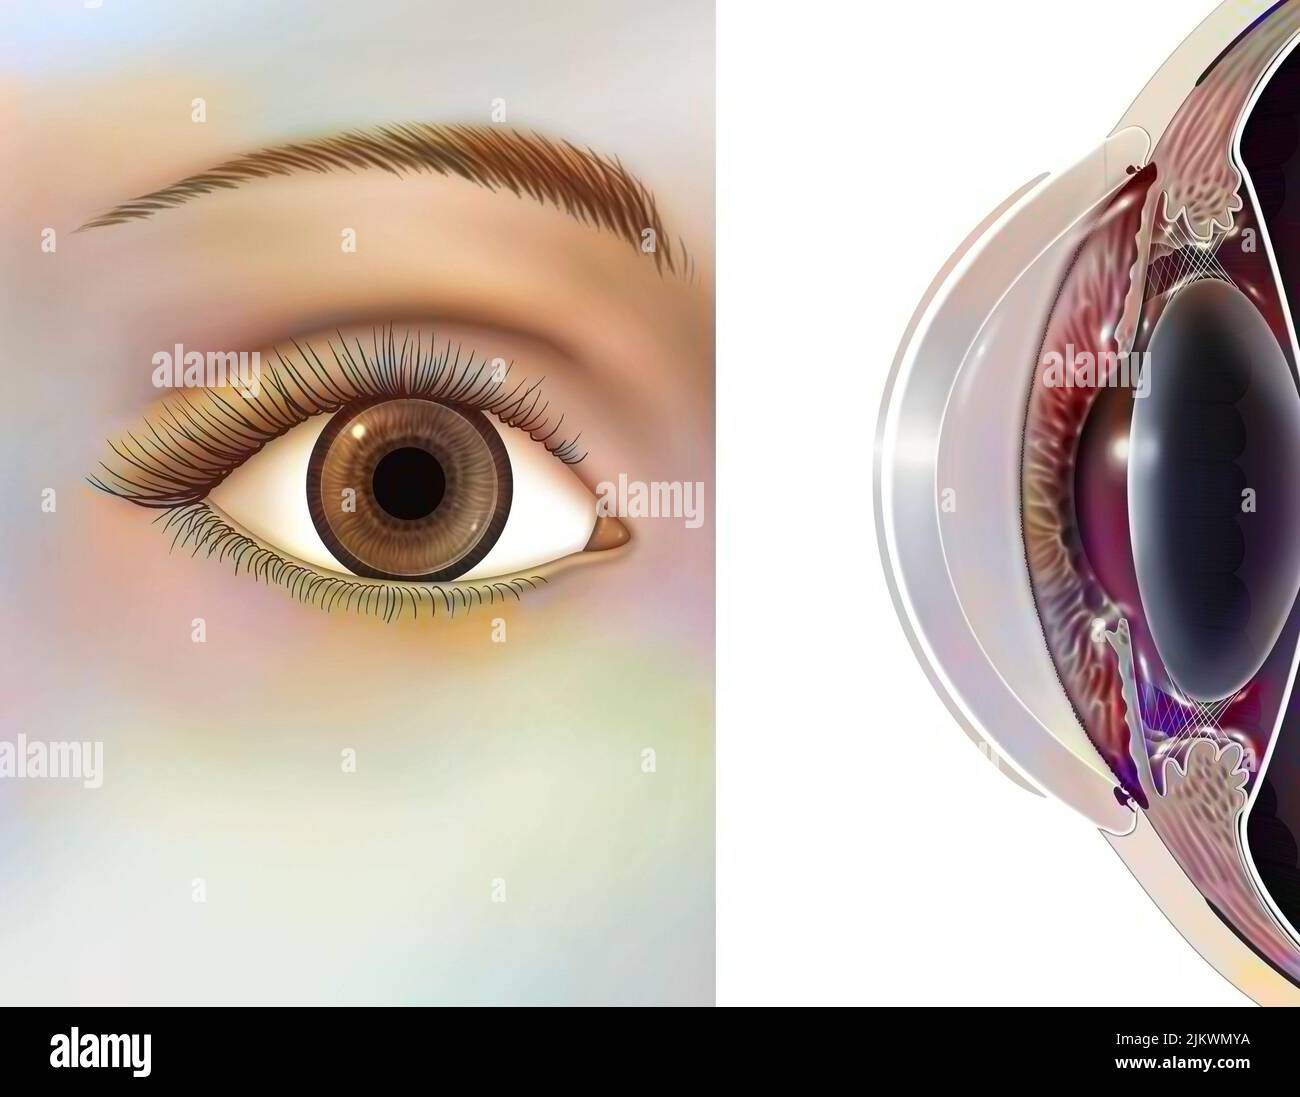 Occhio: Posizione e dimensioni delle lenti rigide. Foto Stock